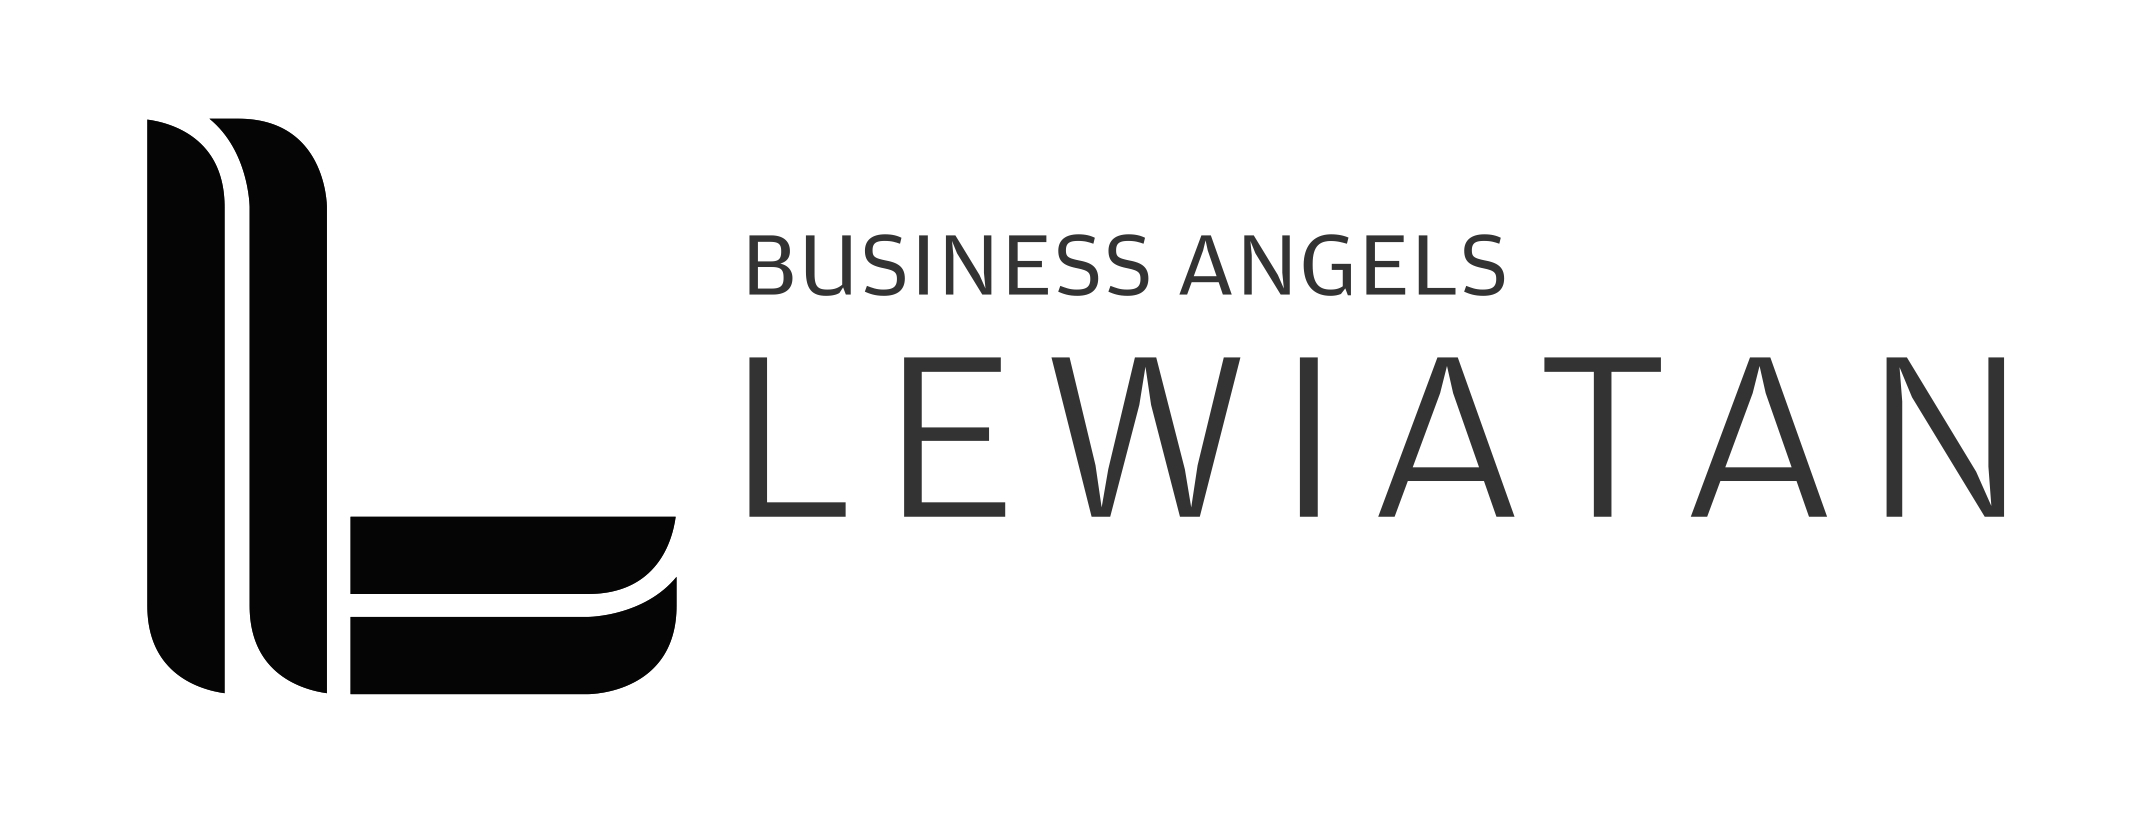 Lewiatan Business Angels.jpg